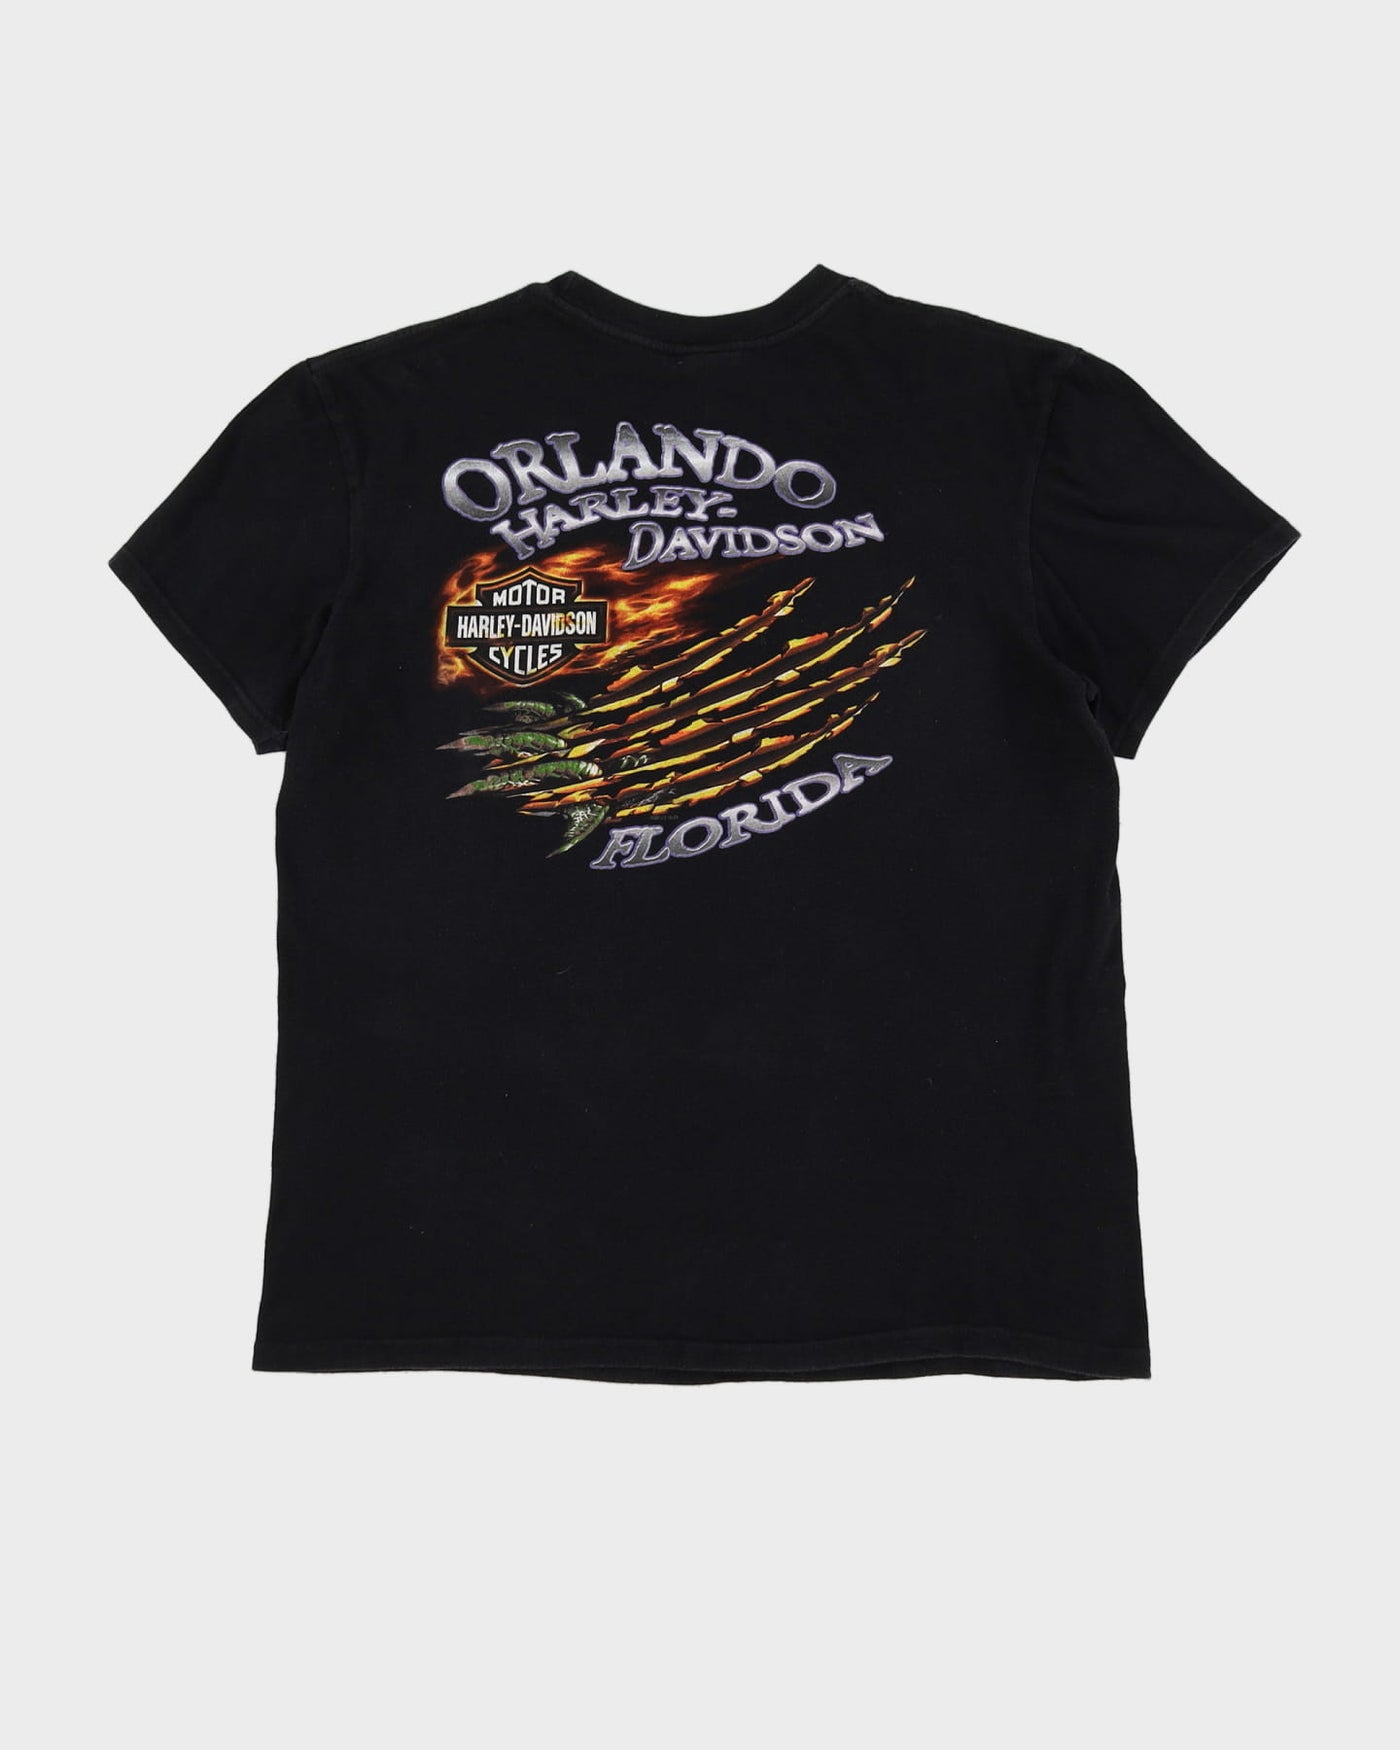 2013 Harley Davidson Black Crocodile Print T-Shirt - L